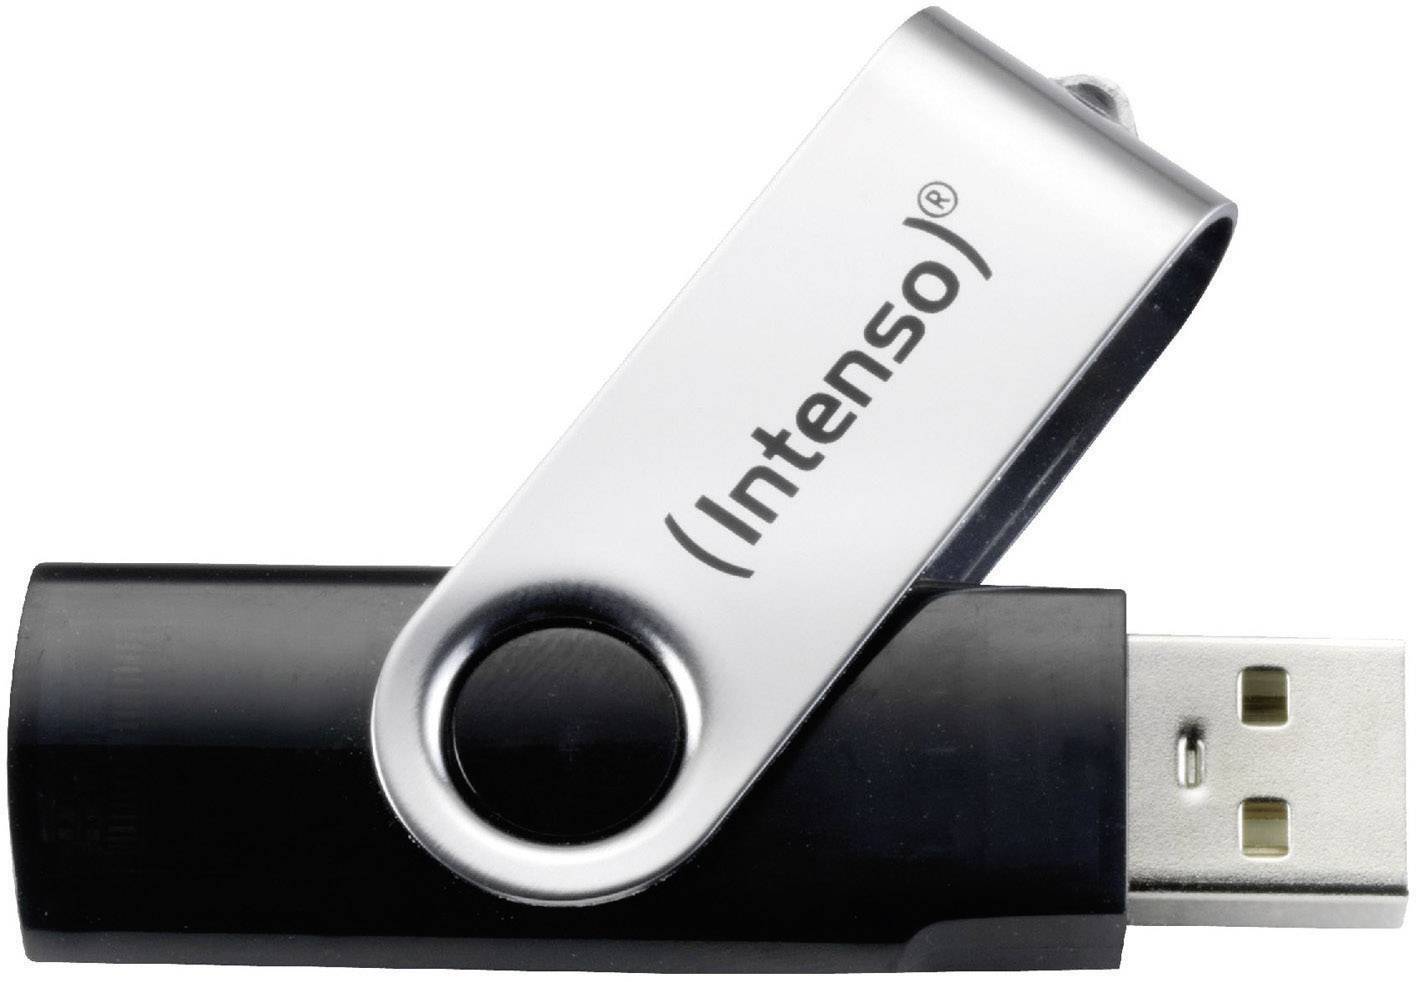 USB Flash  16GB USB 2.0 Intenso Basic.L.